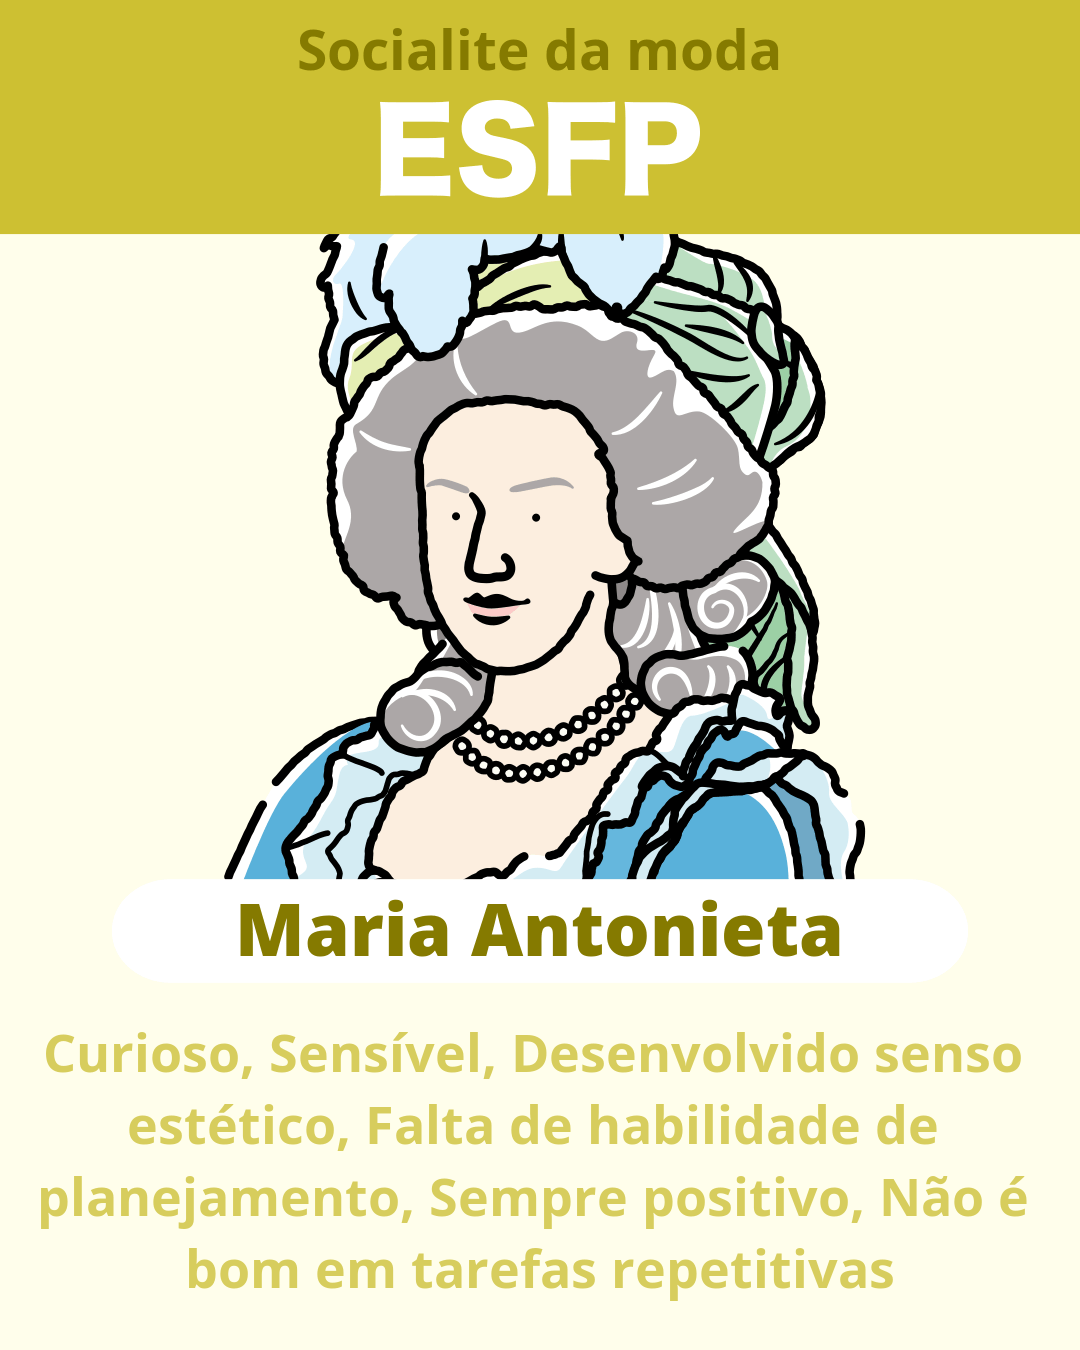 Maria Antonieta - ESFP